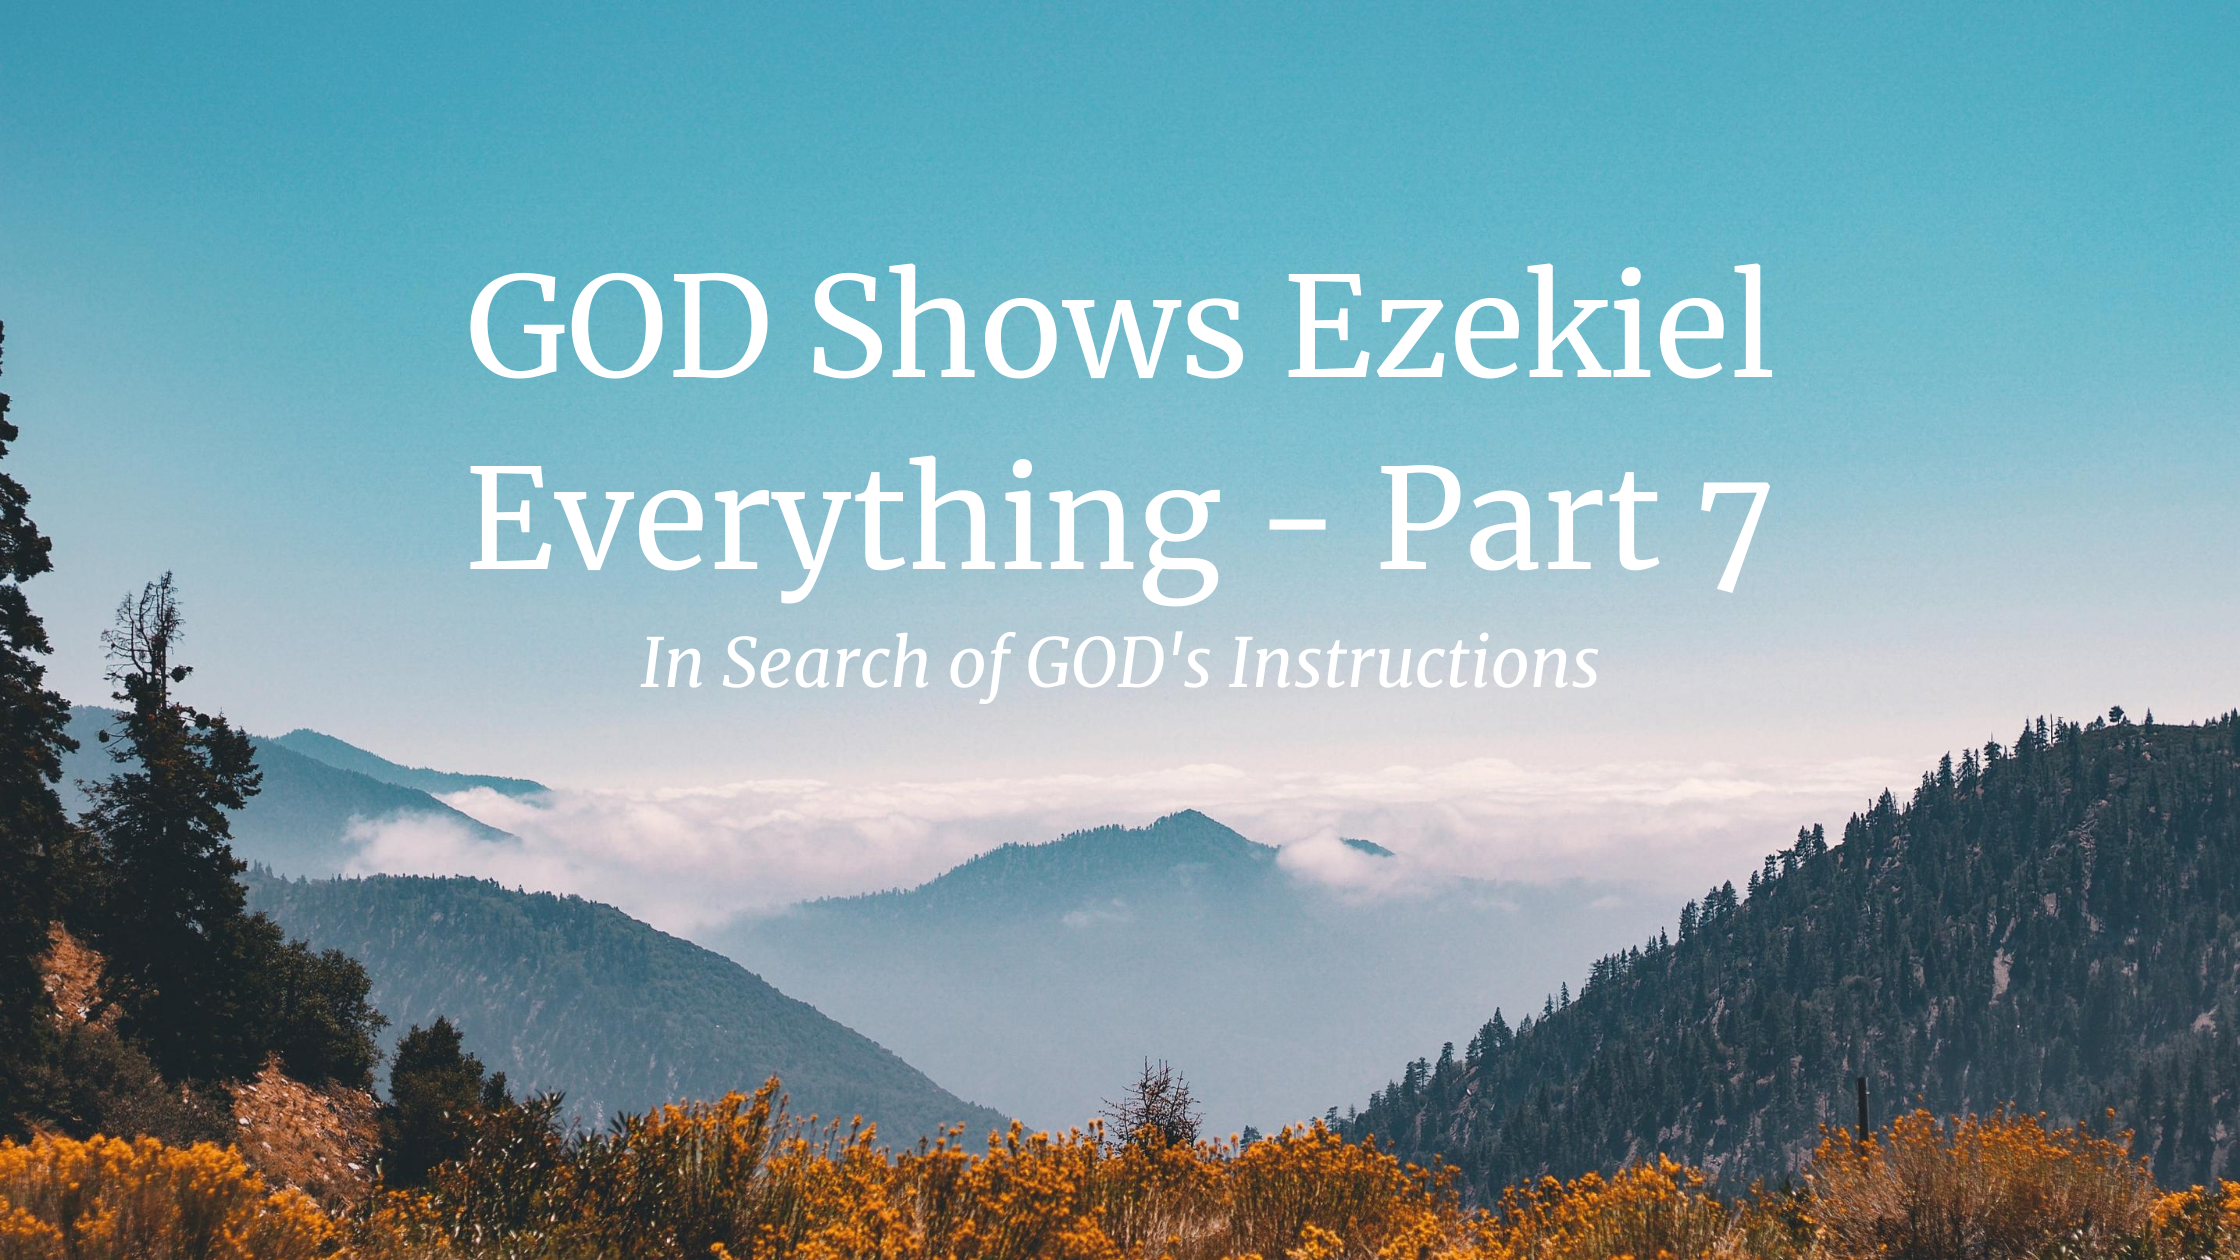 GOD Shows Ezekiel Everything – Part 7